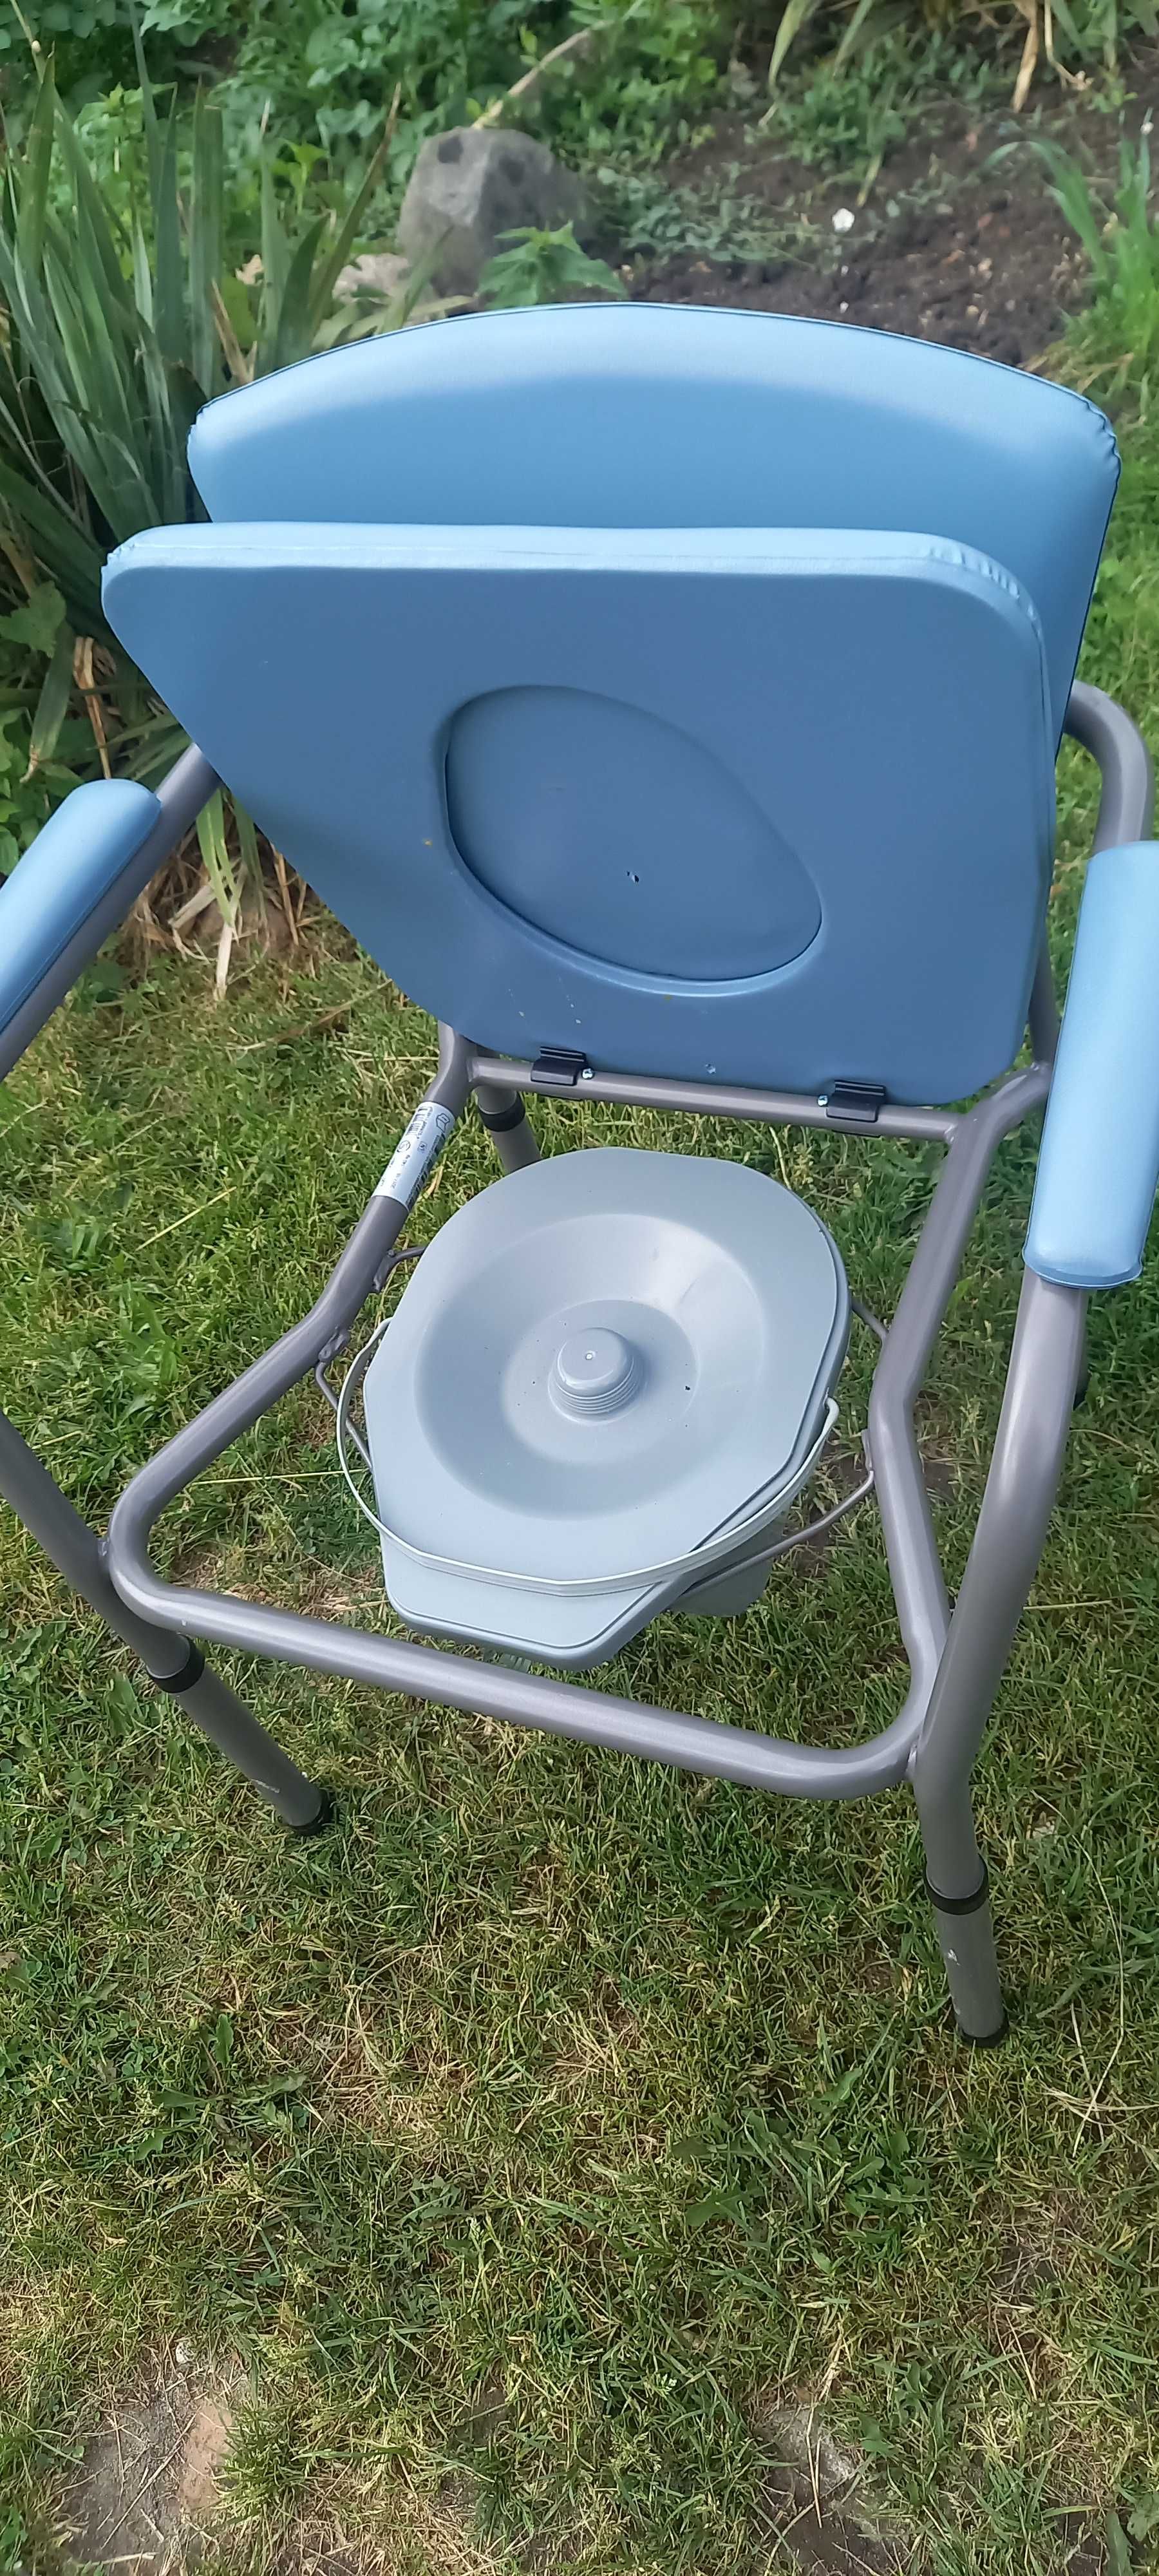 Krzesło toaleta regukowana wysokosc nóżkami